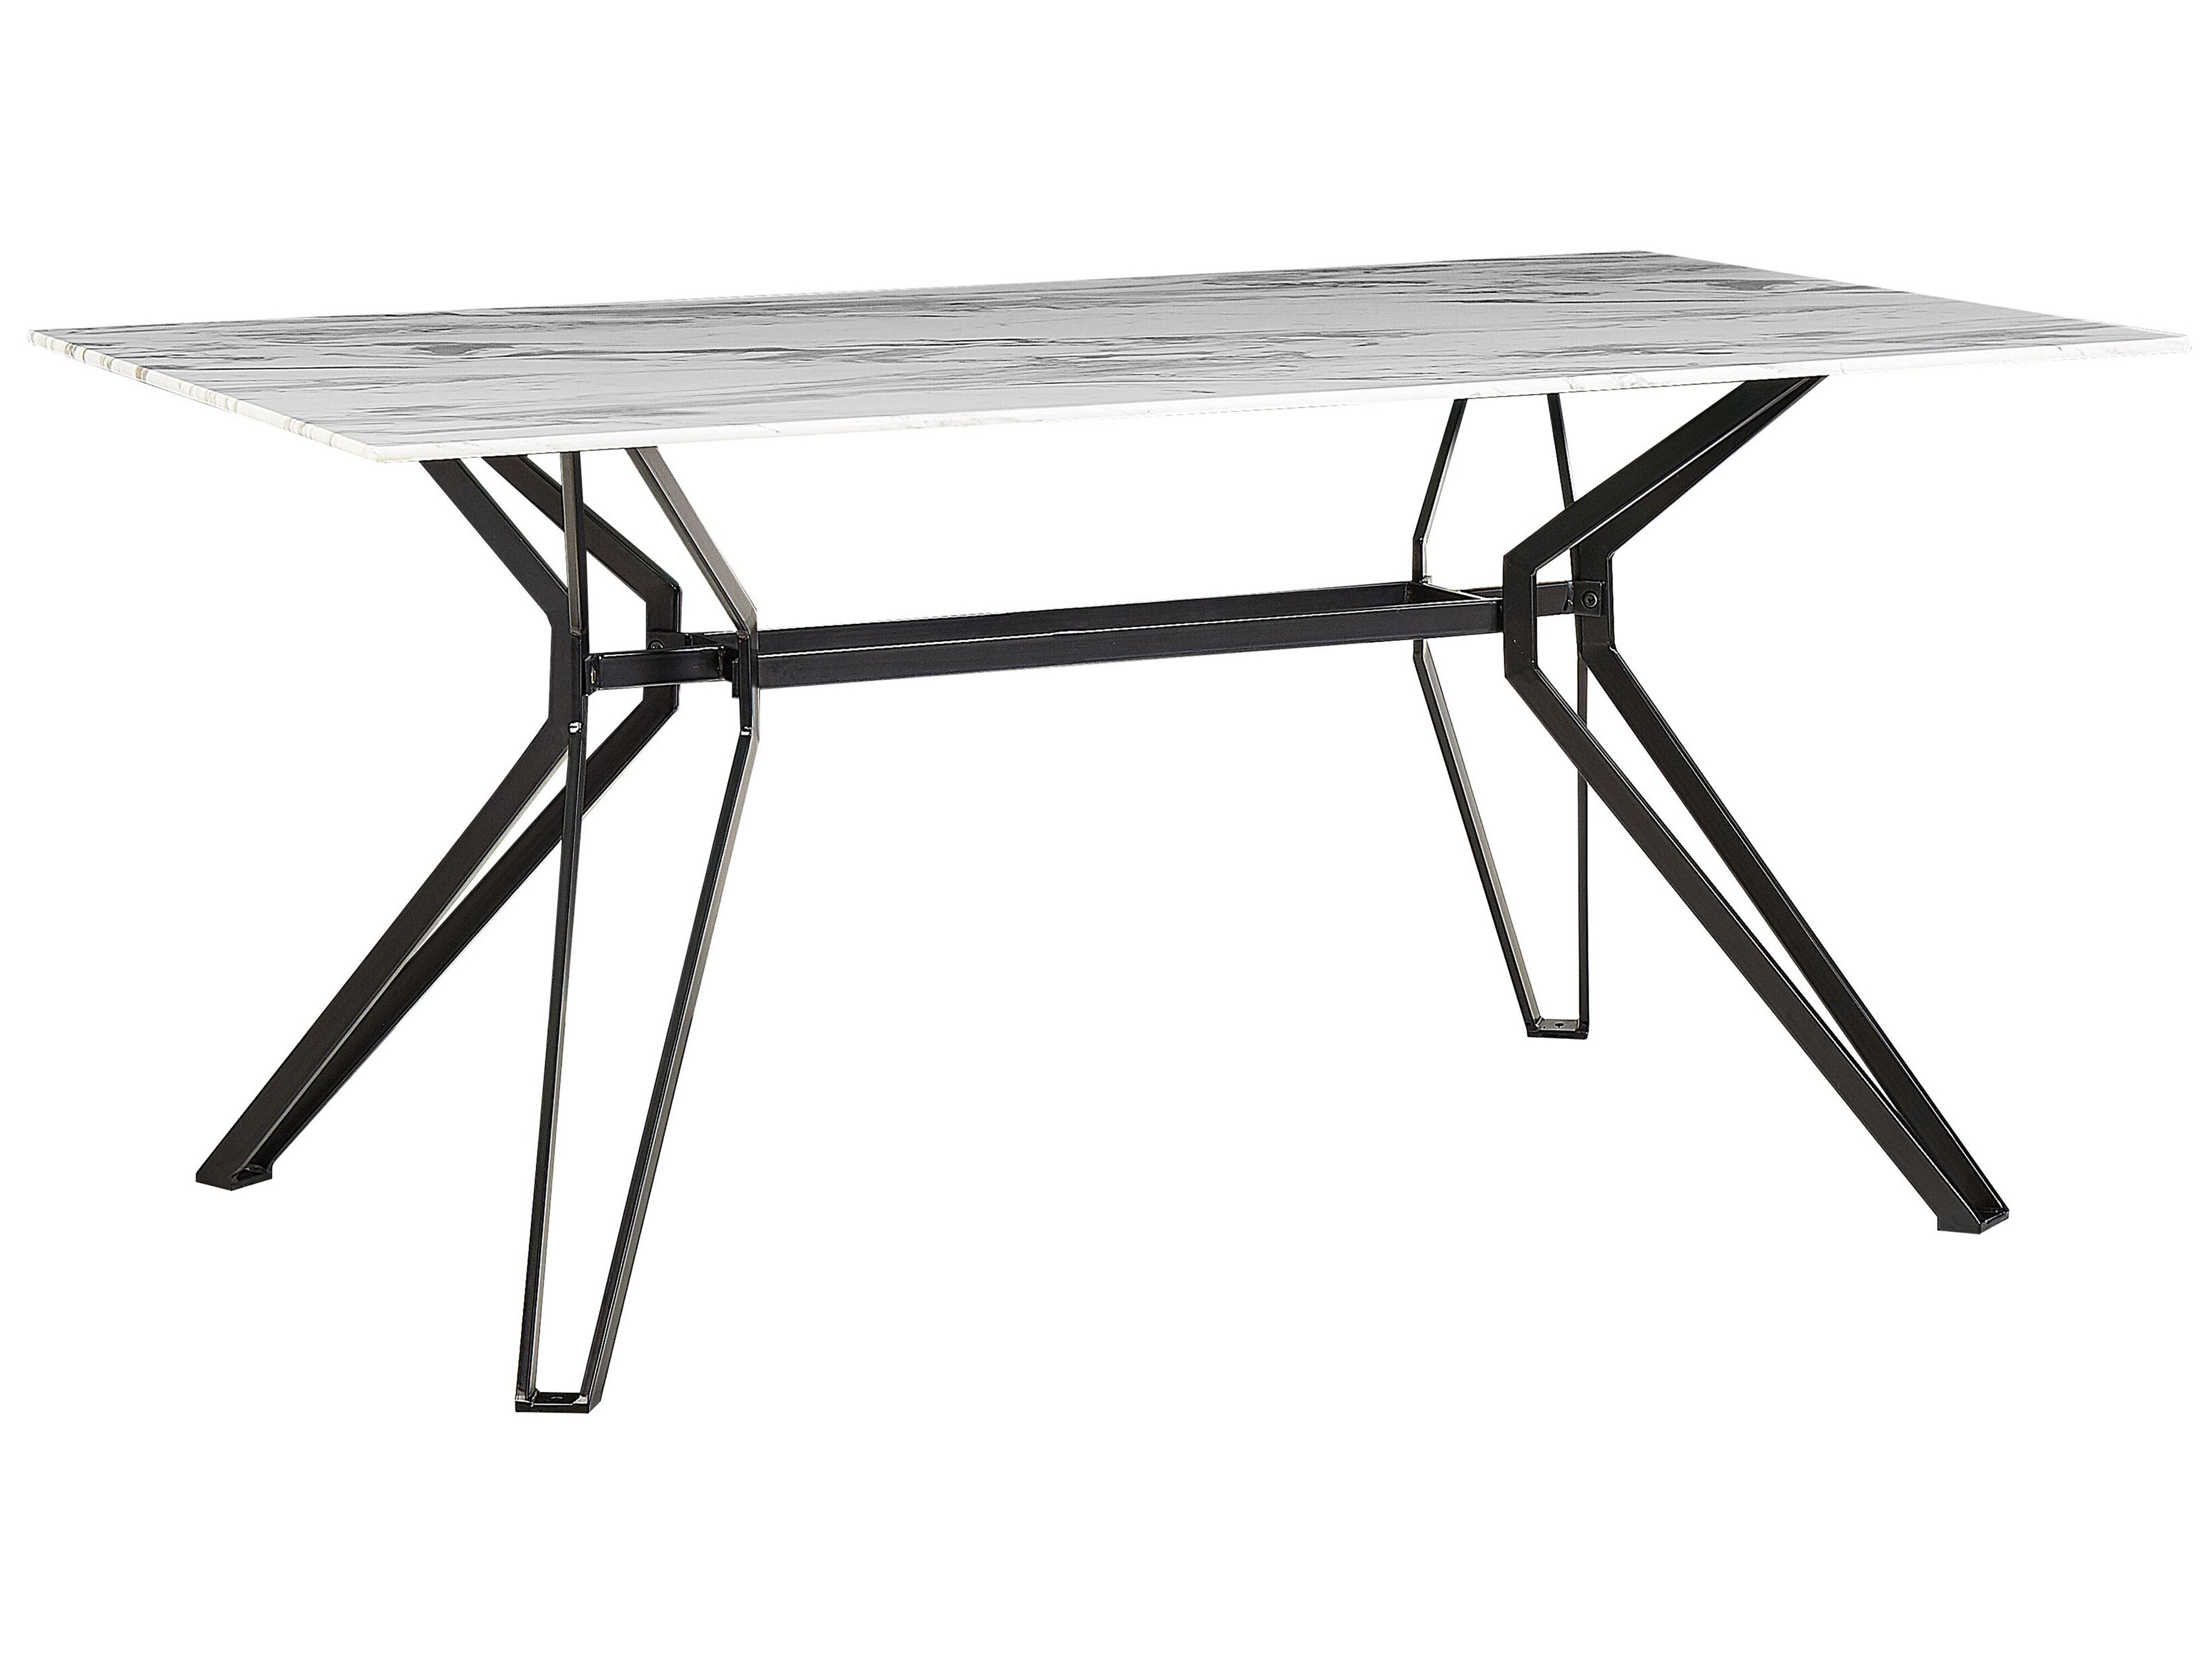 Recensie moeilijk tevreden te krijgen optioneel Eettafel glas wit/zwart marmerlook 160 x 90 cm BALLINA | ✓ Gratis Levering